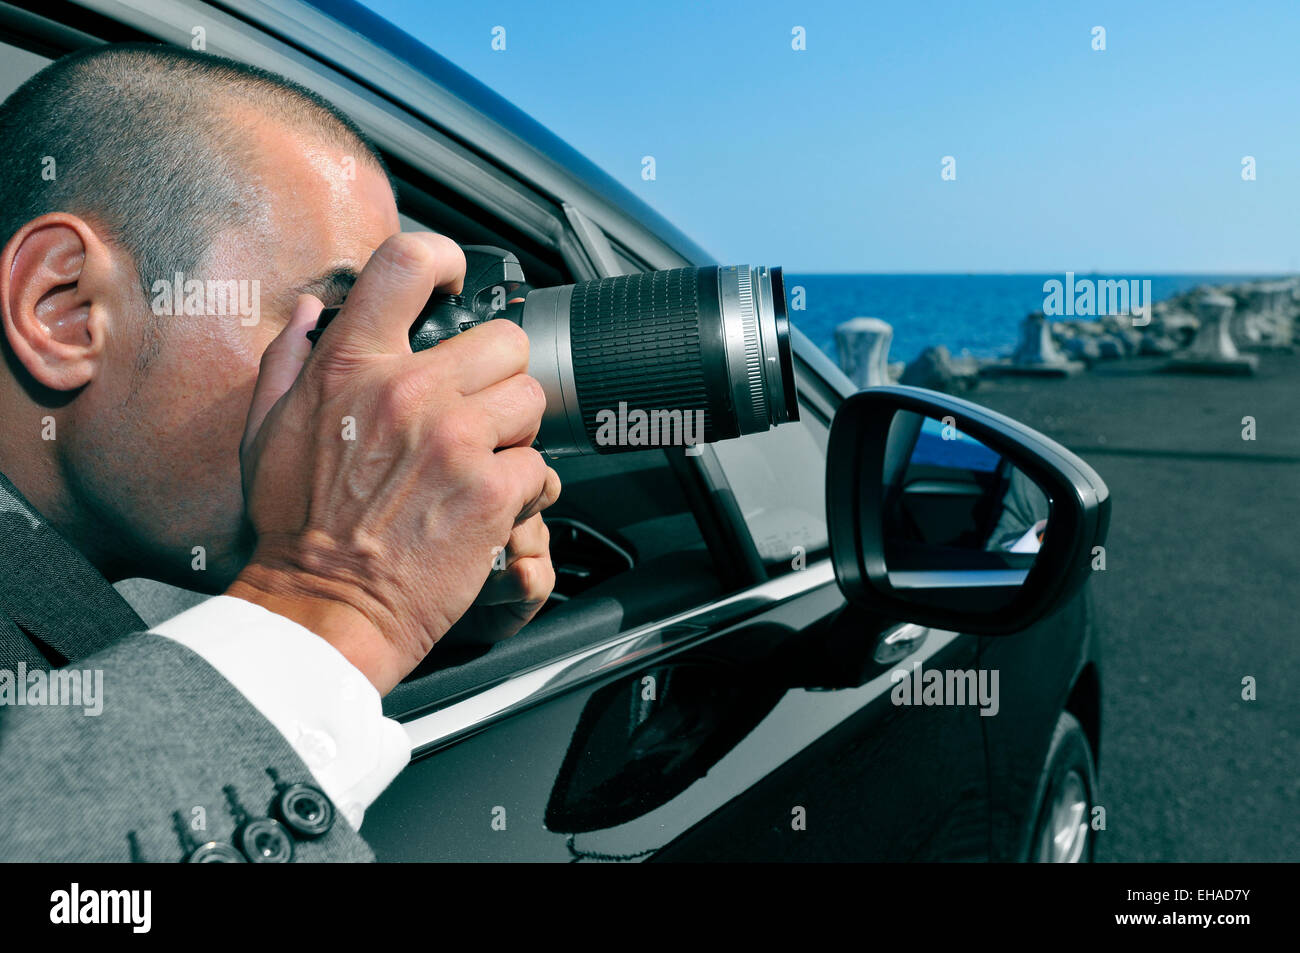 Un détective ou un paparazzi en prenant des photos de l'intérieur d'une voiture Banque D'Images